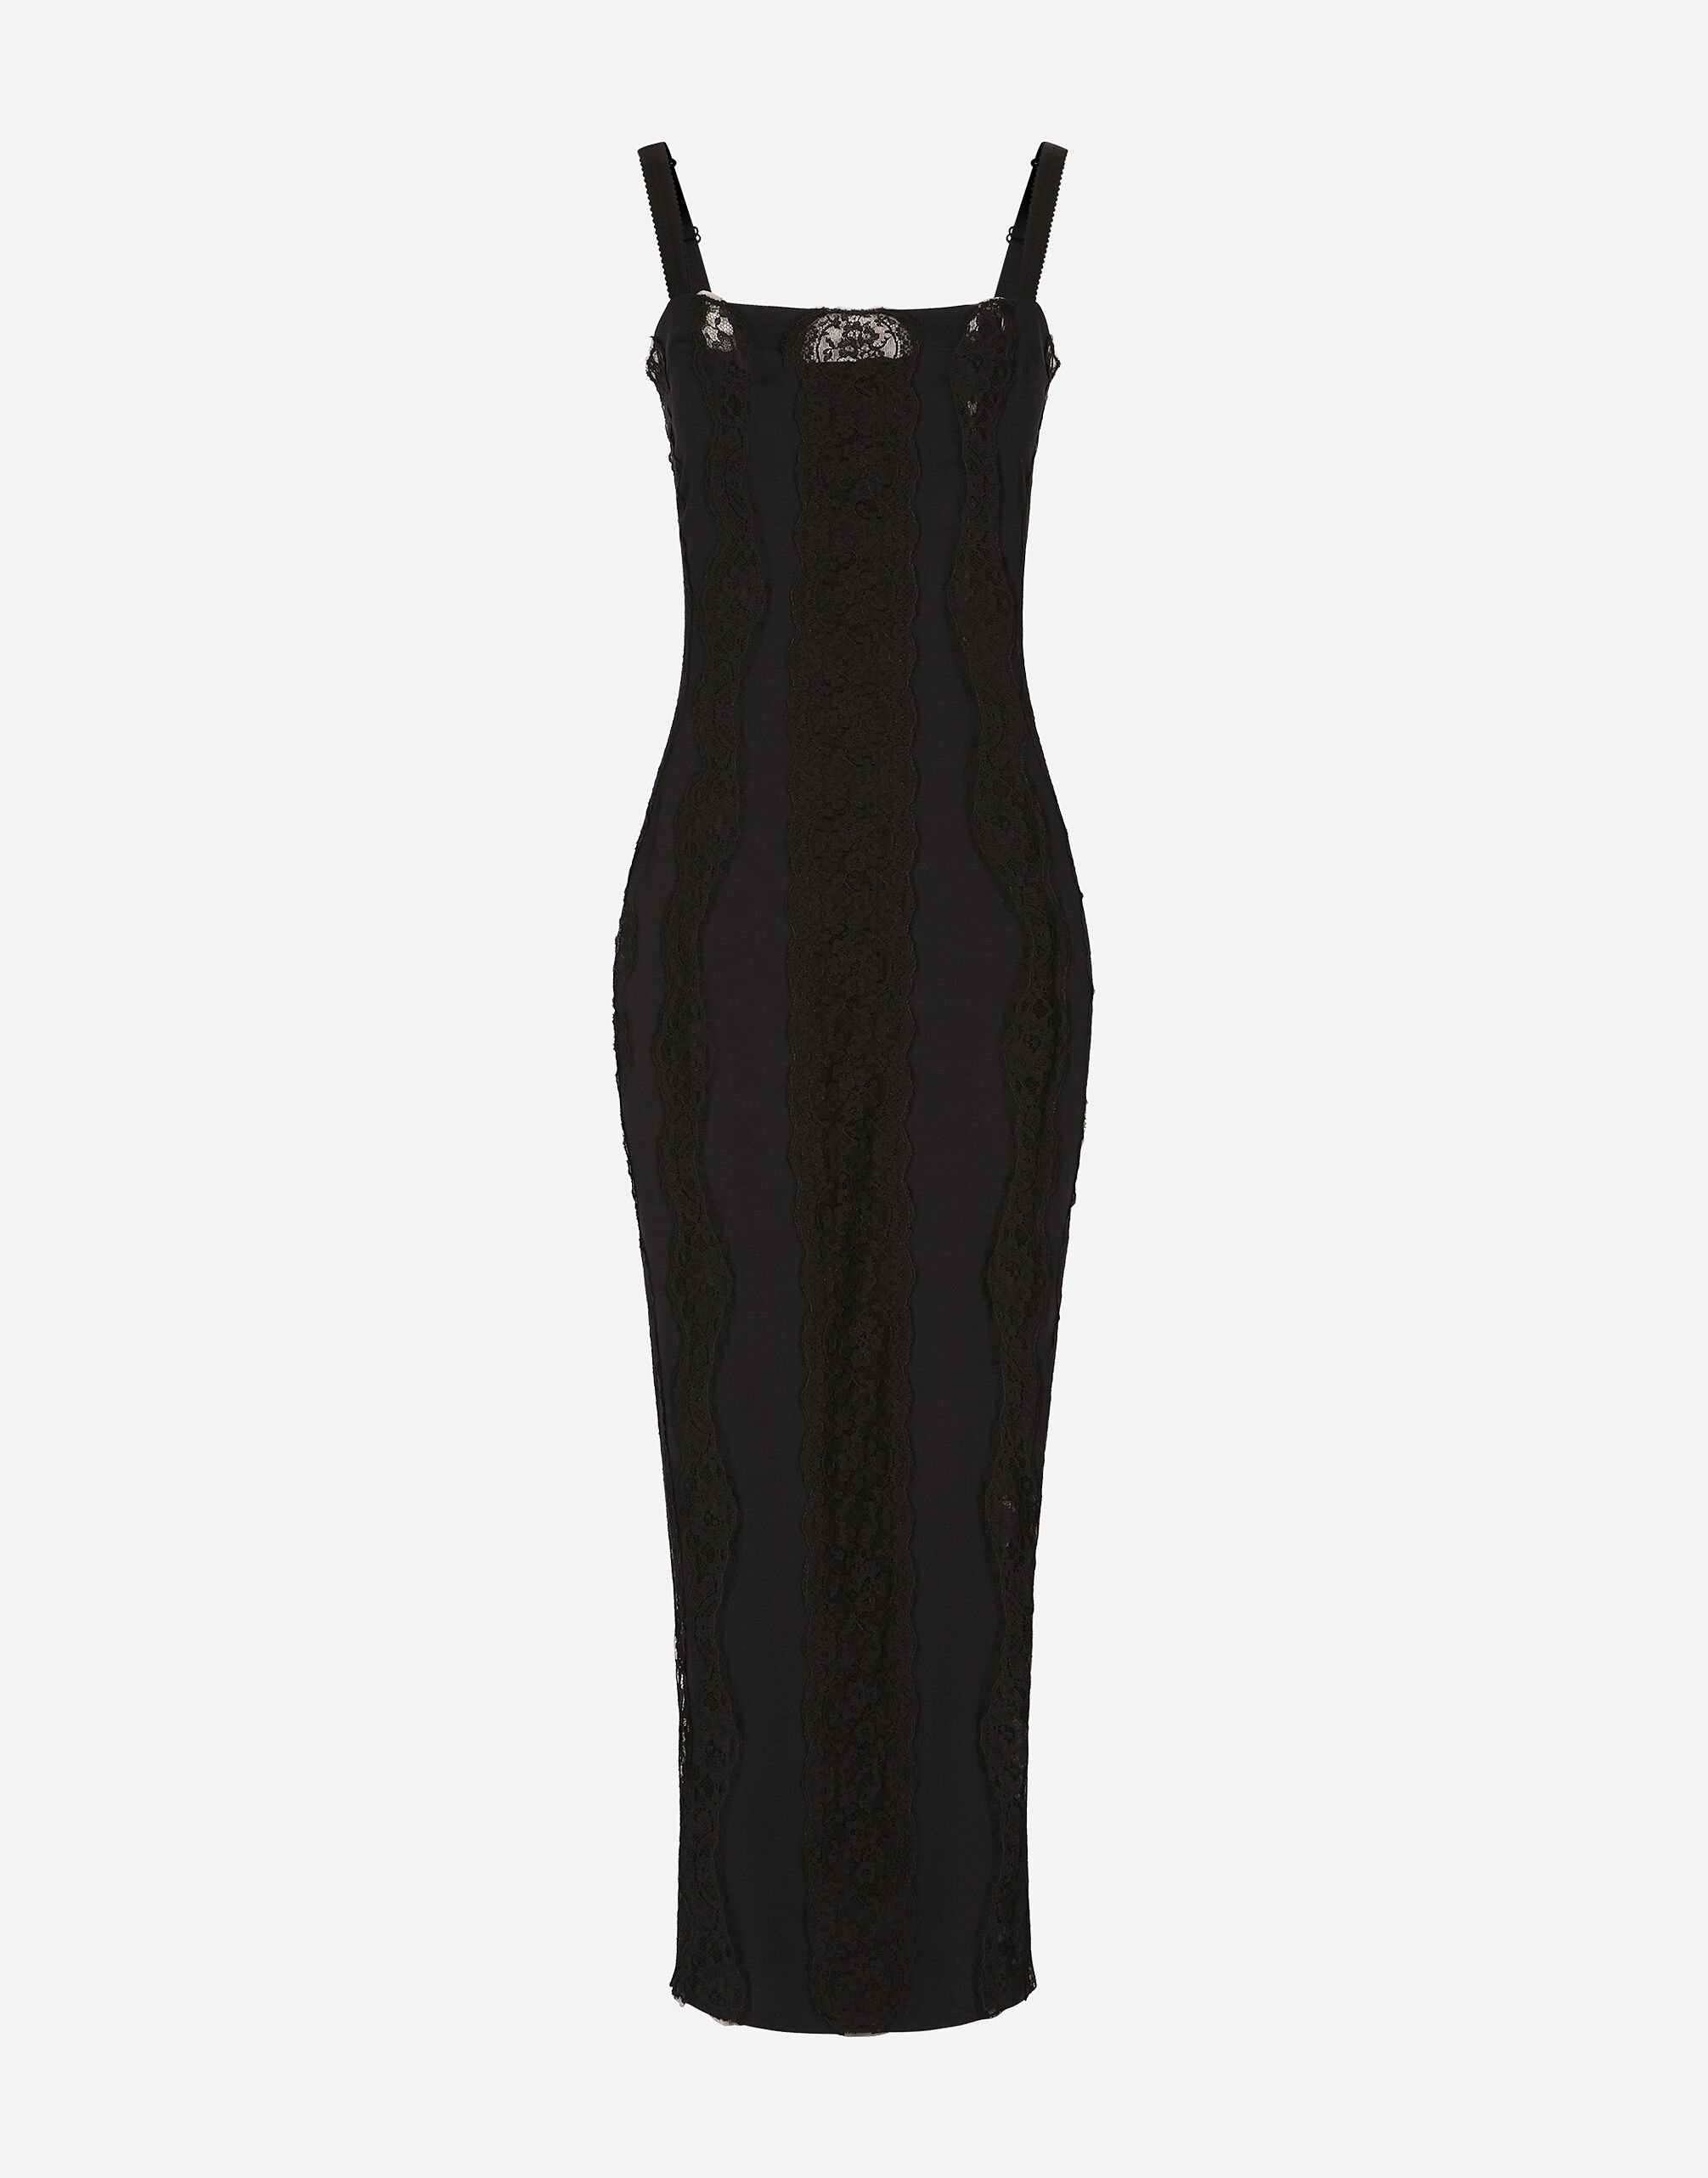 Dolce & Gabbana فستان جيرسي بطول للربلة وتطعيمات دانتيل أسود BB7287A1471